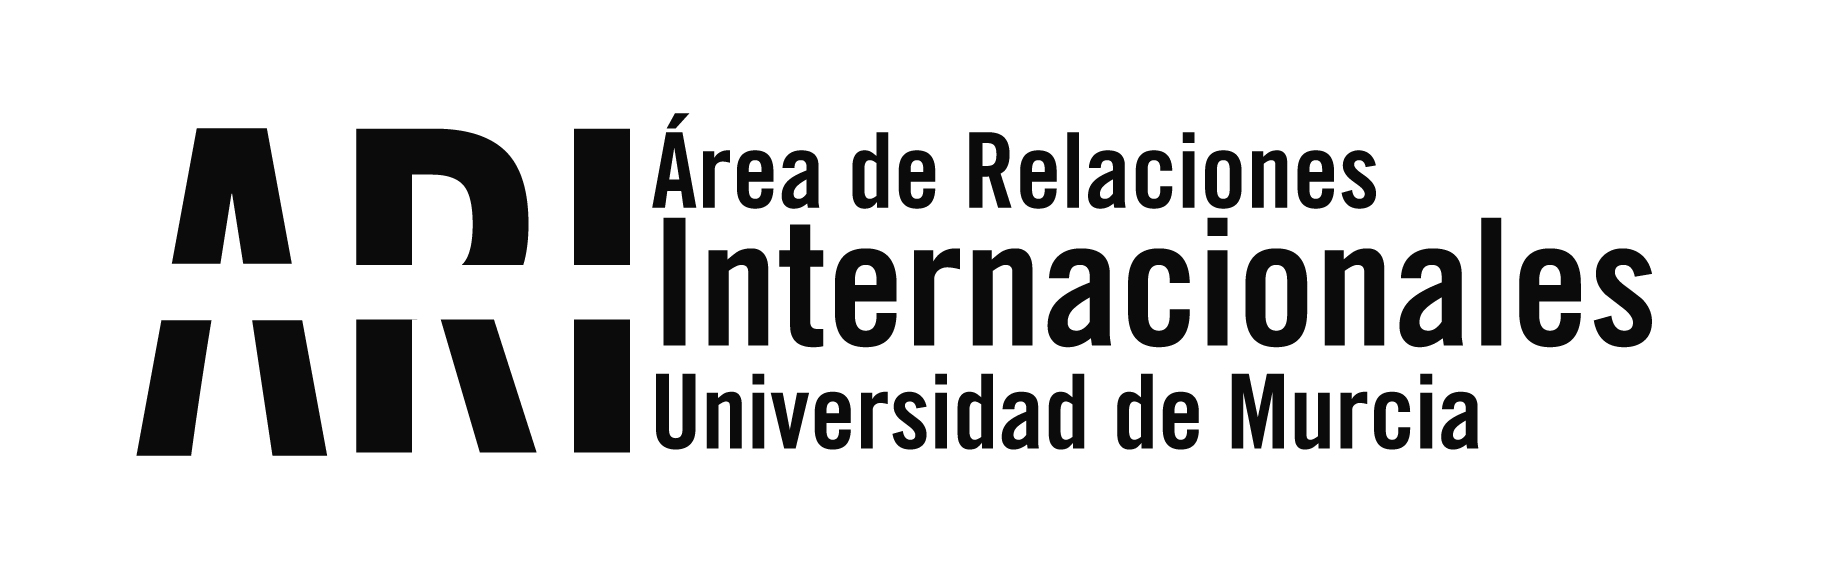 La Universidad de Murcia se adhiere a la petición #Erasmus500 de una beca erasmus unificada de 500 euros al mes - Área de Relaciones Internacionales